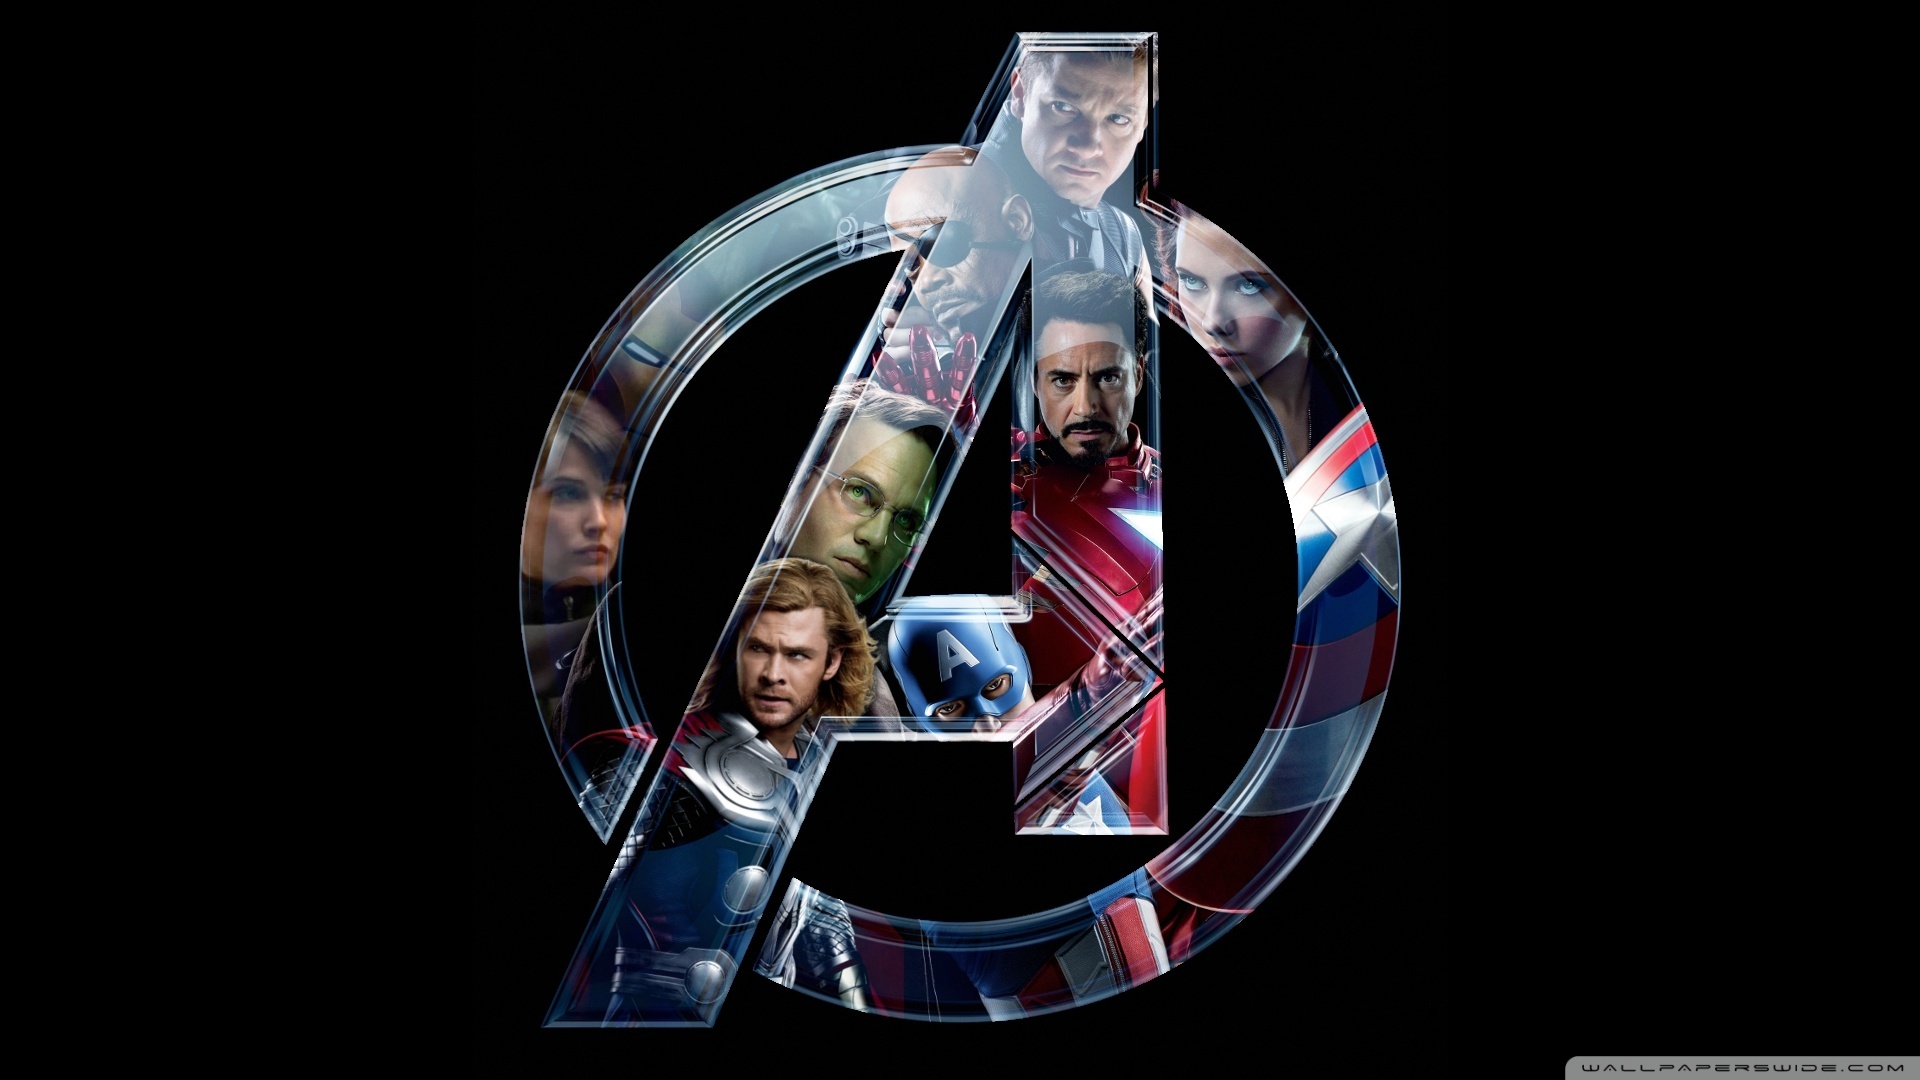 Marvel Avengers Wallpaper The HD